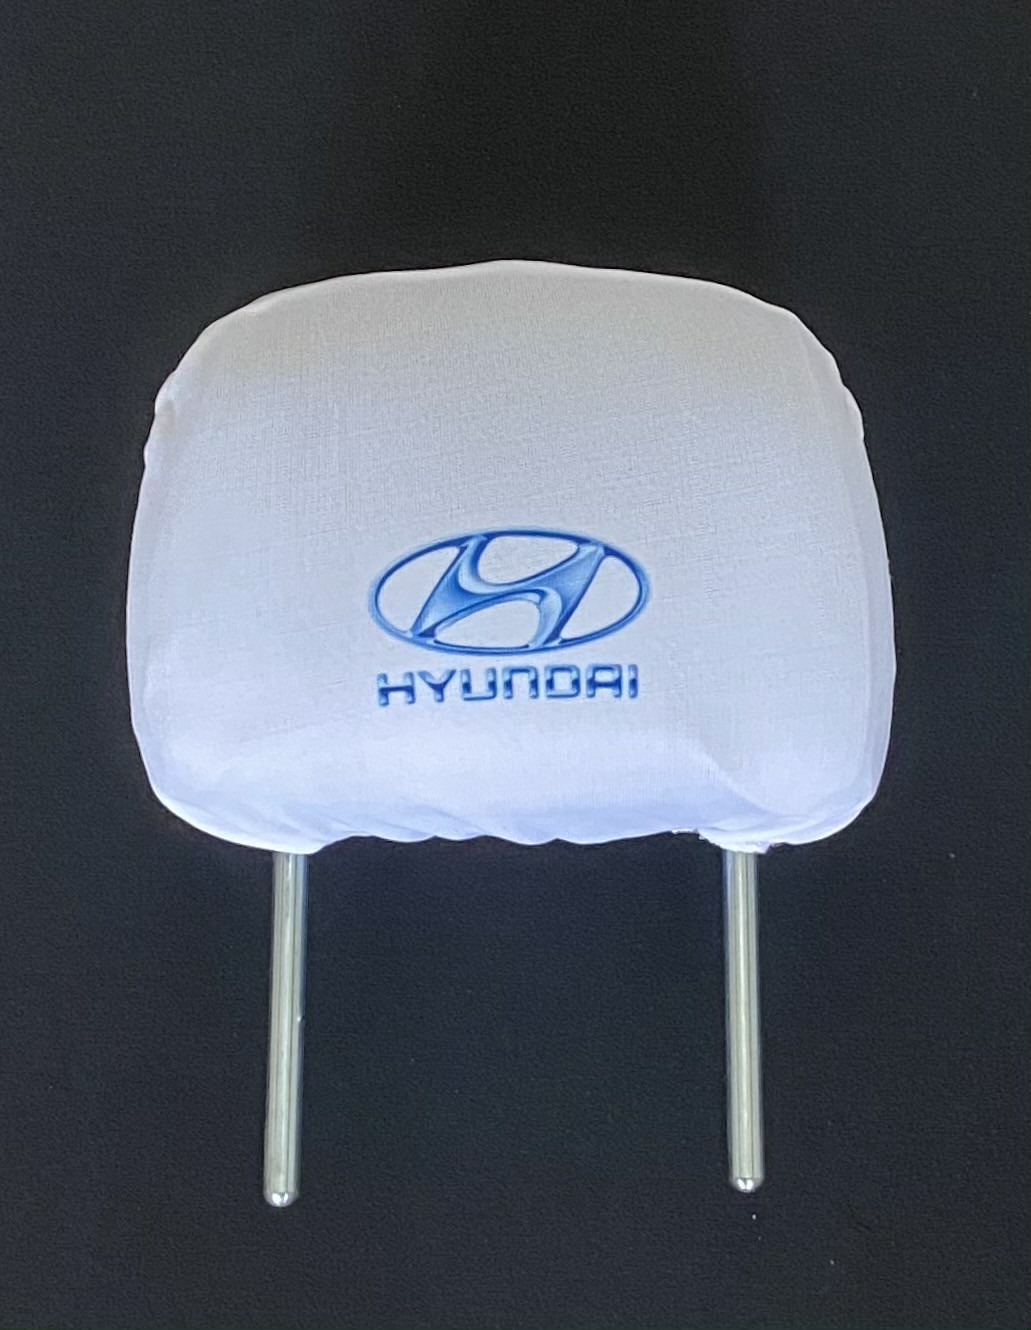 Biele návleky na opierky hlavy s logom Hyundai - 2ks